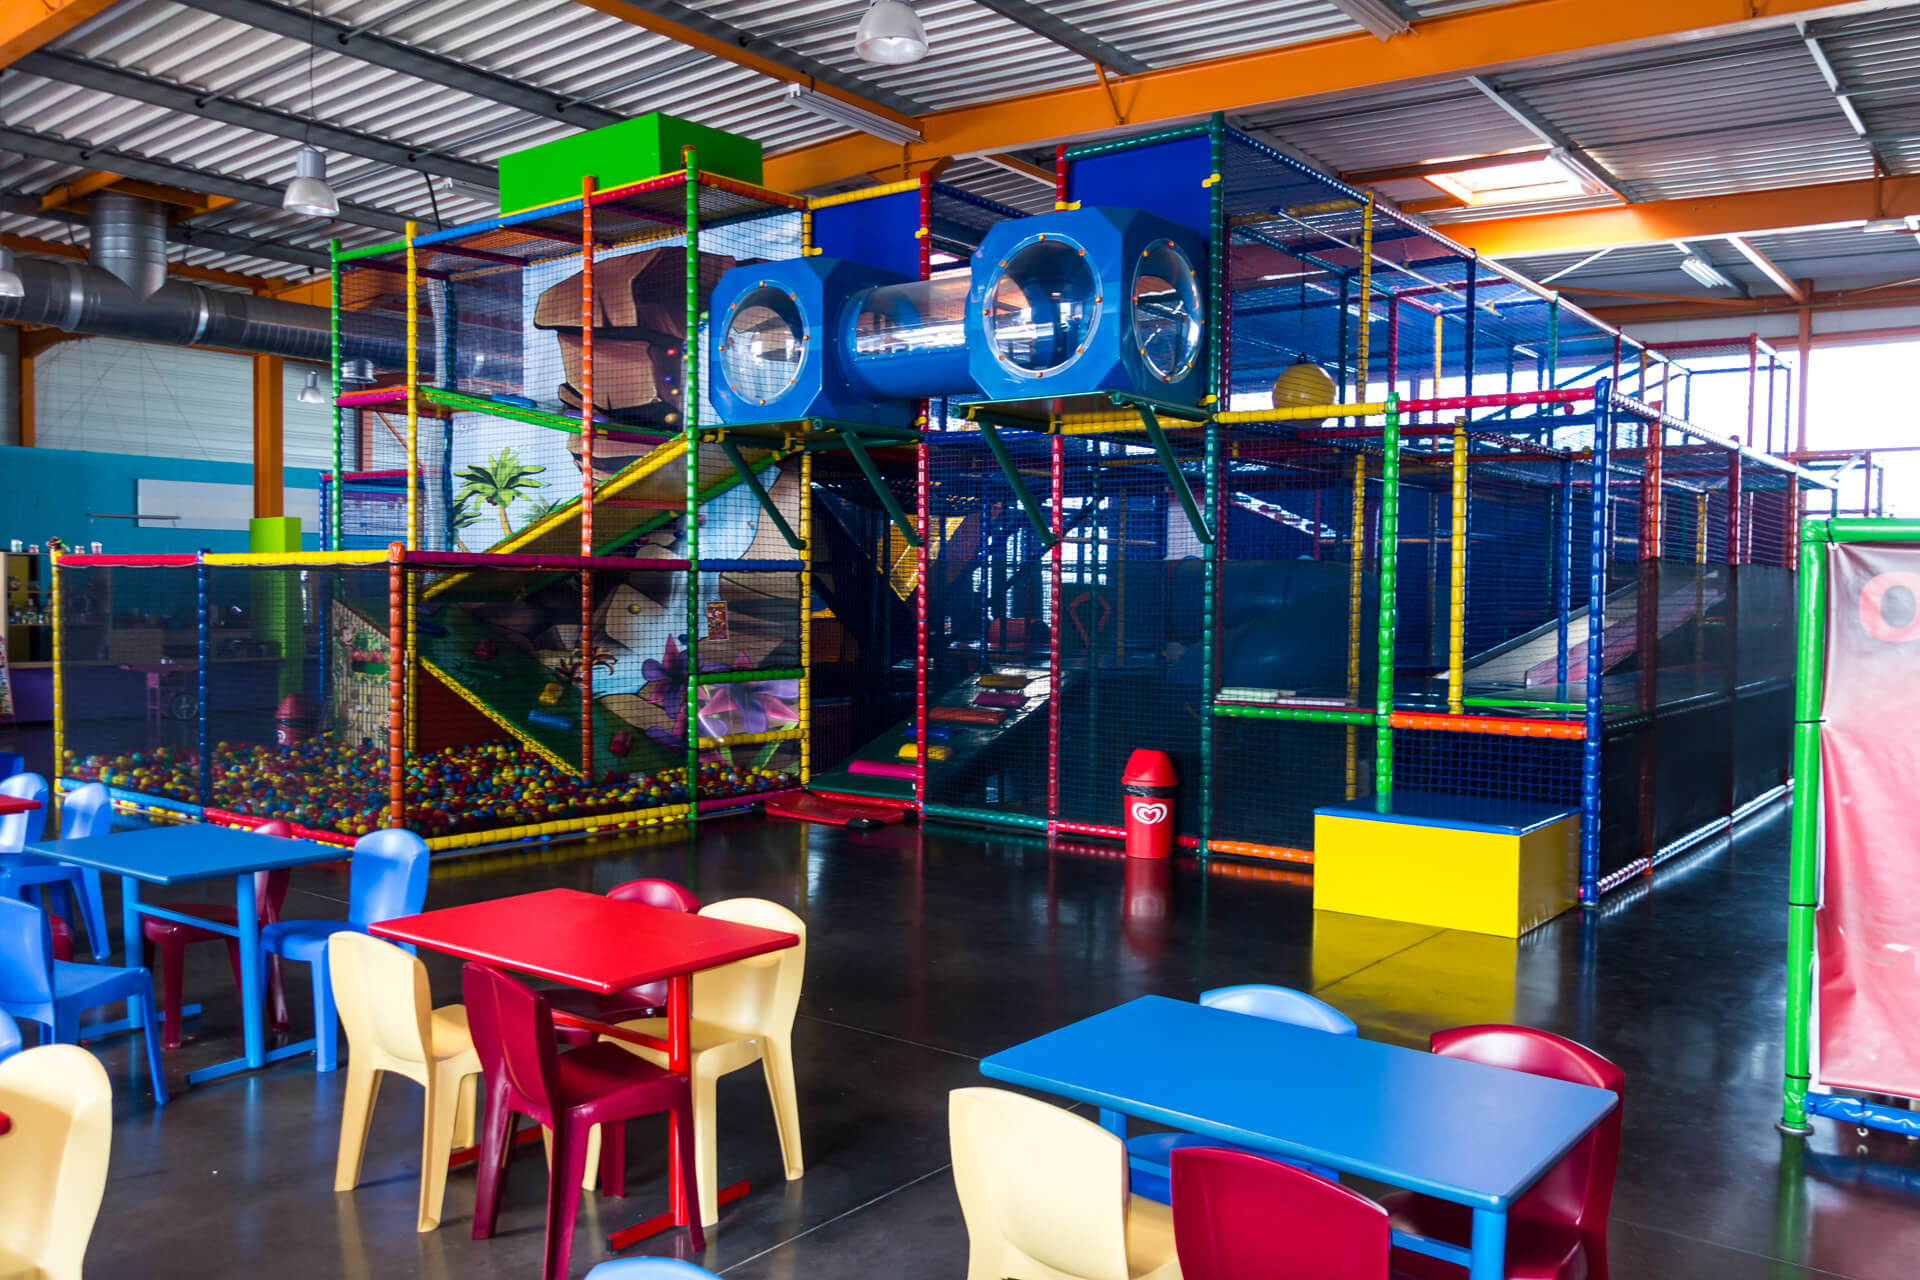 Indoorspielplatz Einrichtung - Ameco Playgrounds
